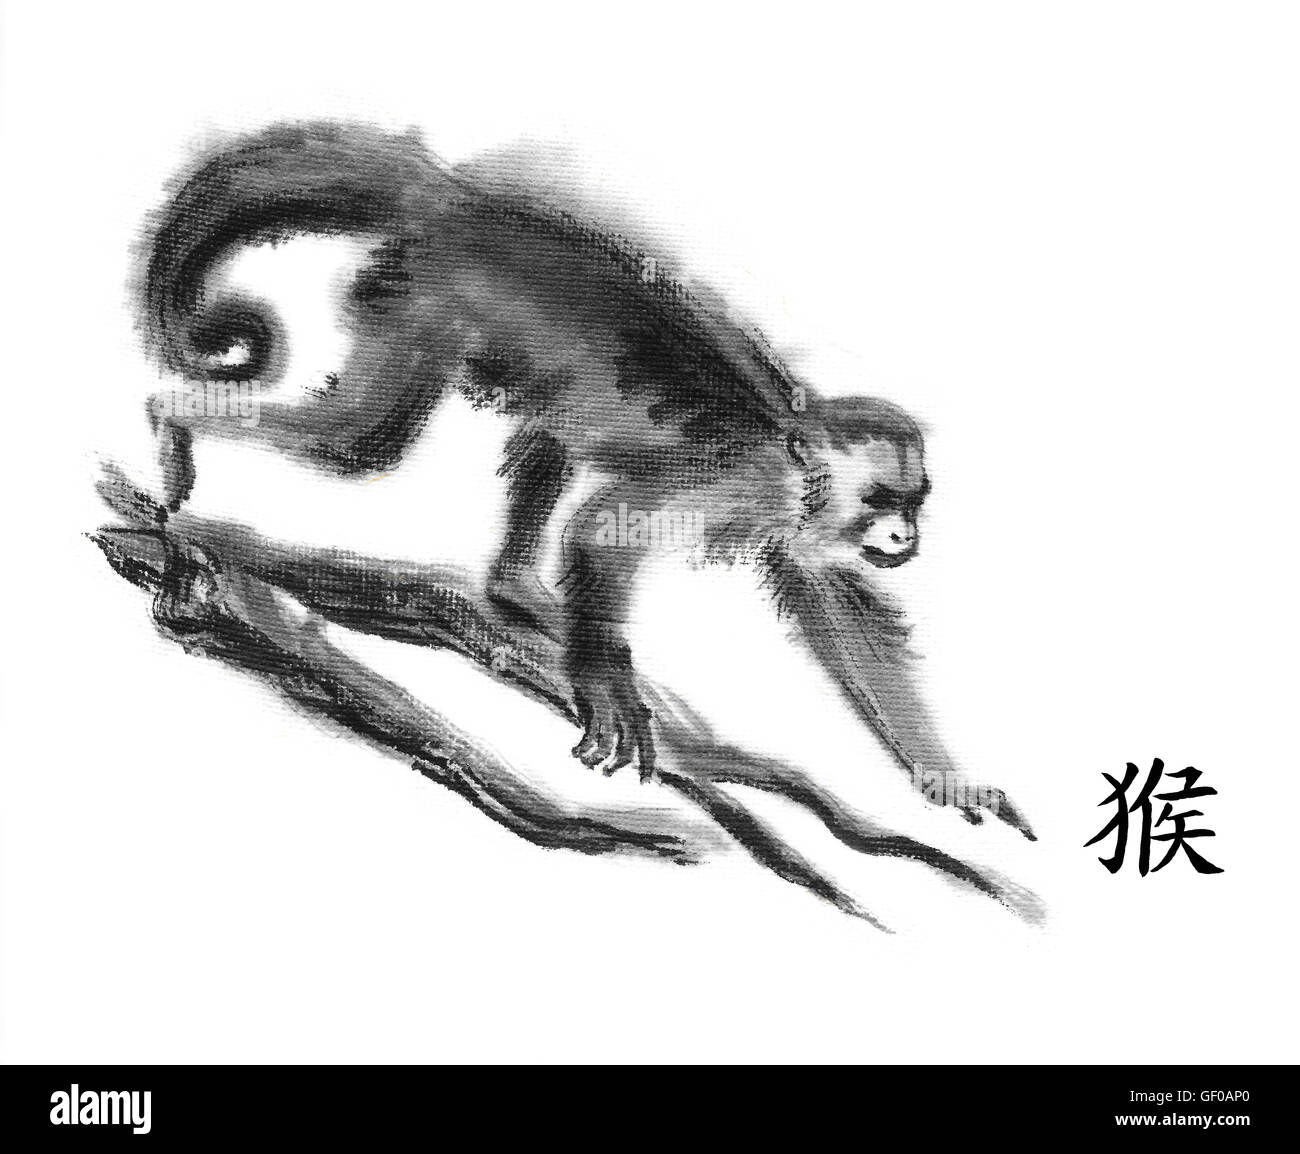 Peinture encre oriental singe avec 'Monkey' hiéroglyphe chinois. La marche des capucins gracile sur les branches d'arbres. Isolated on white Banque D'Images